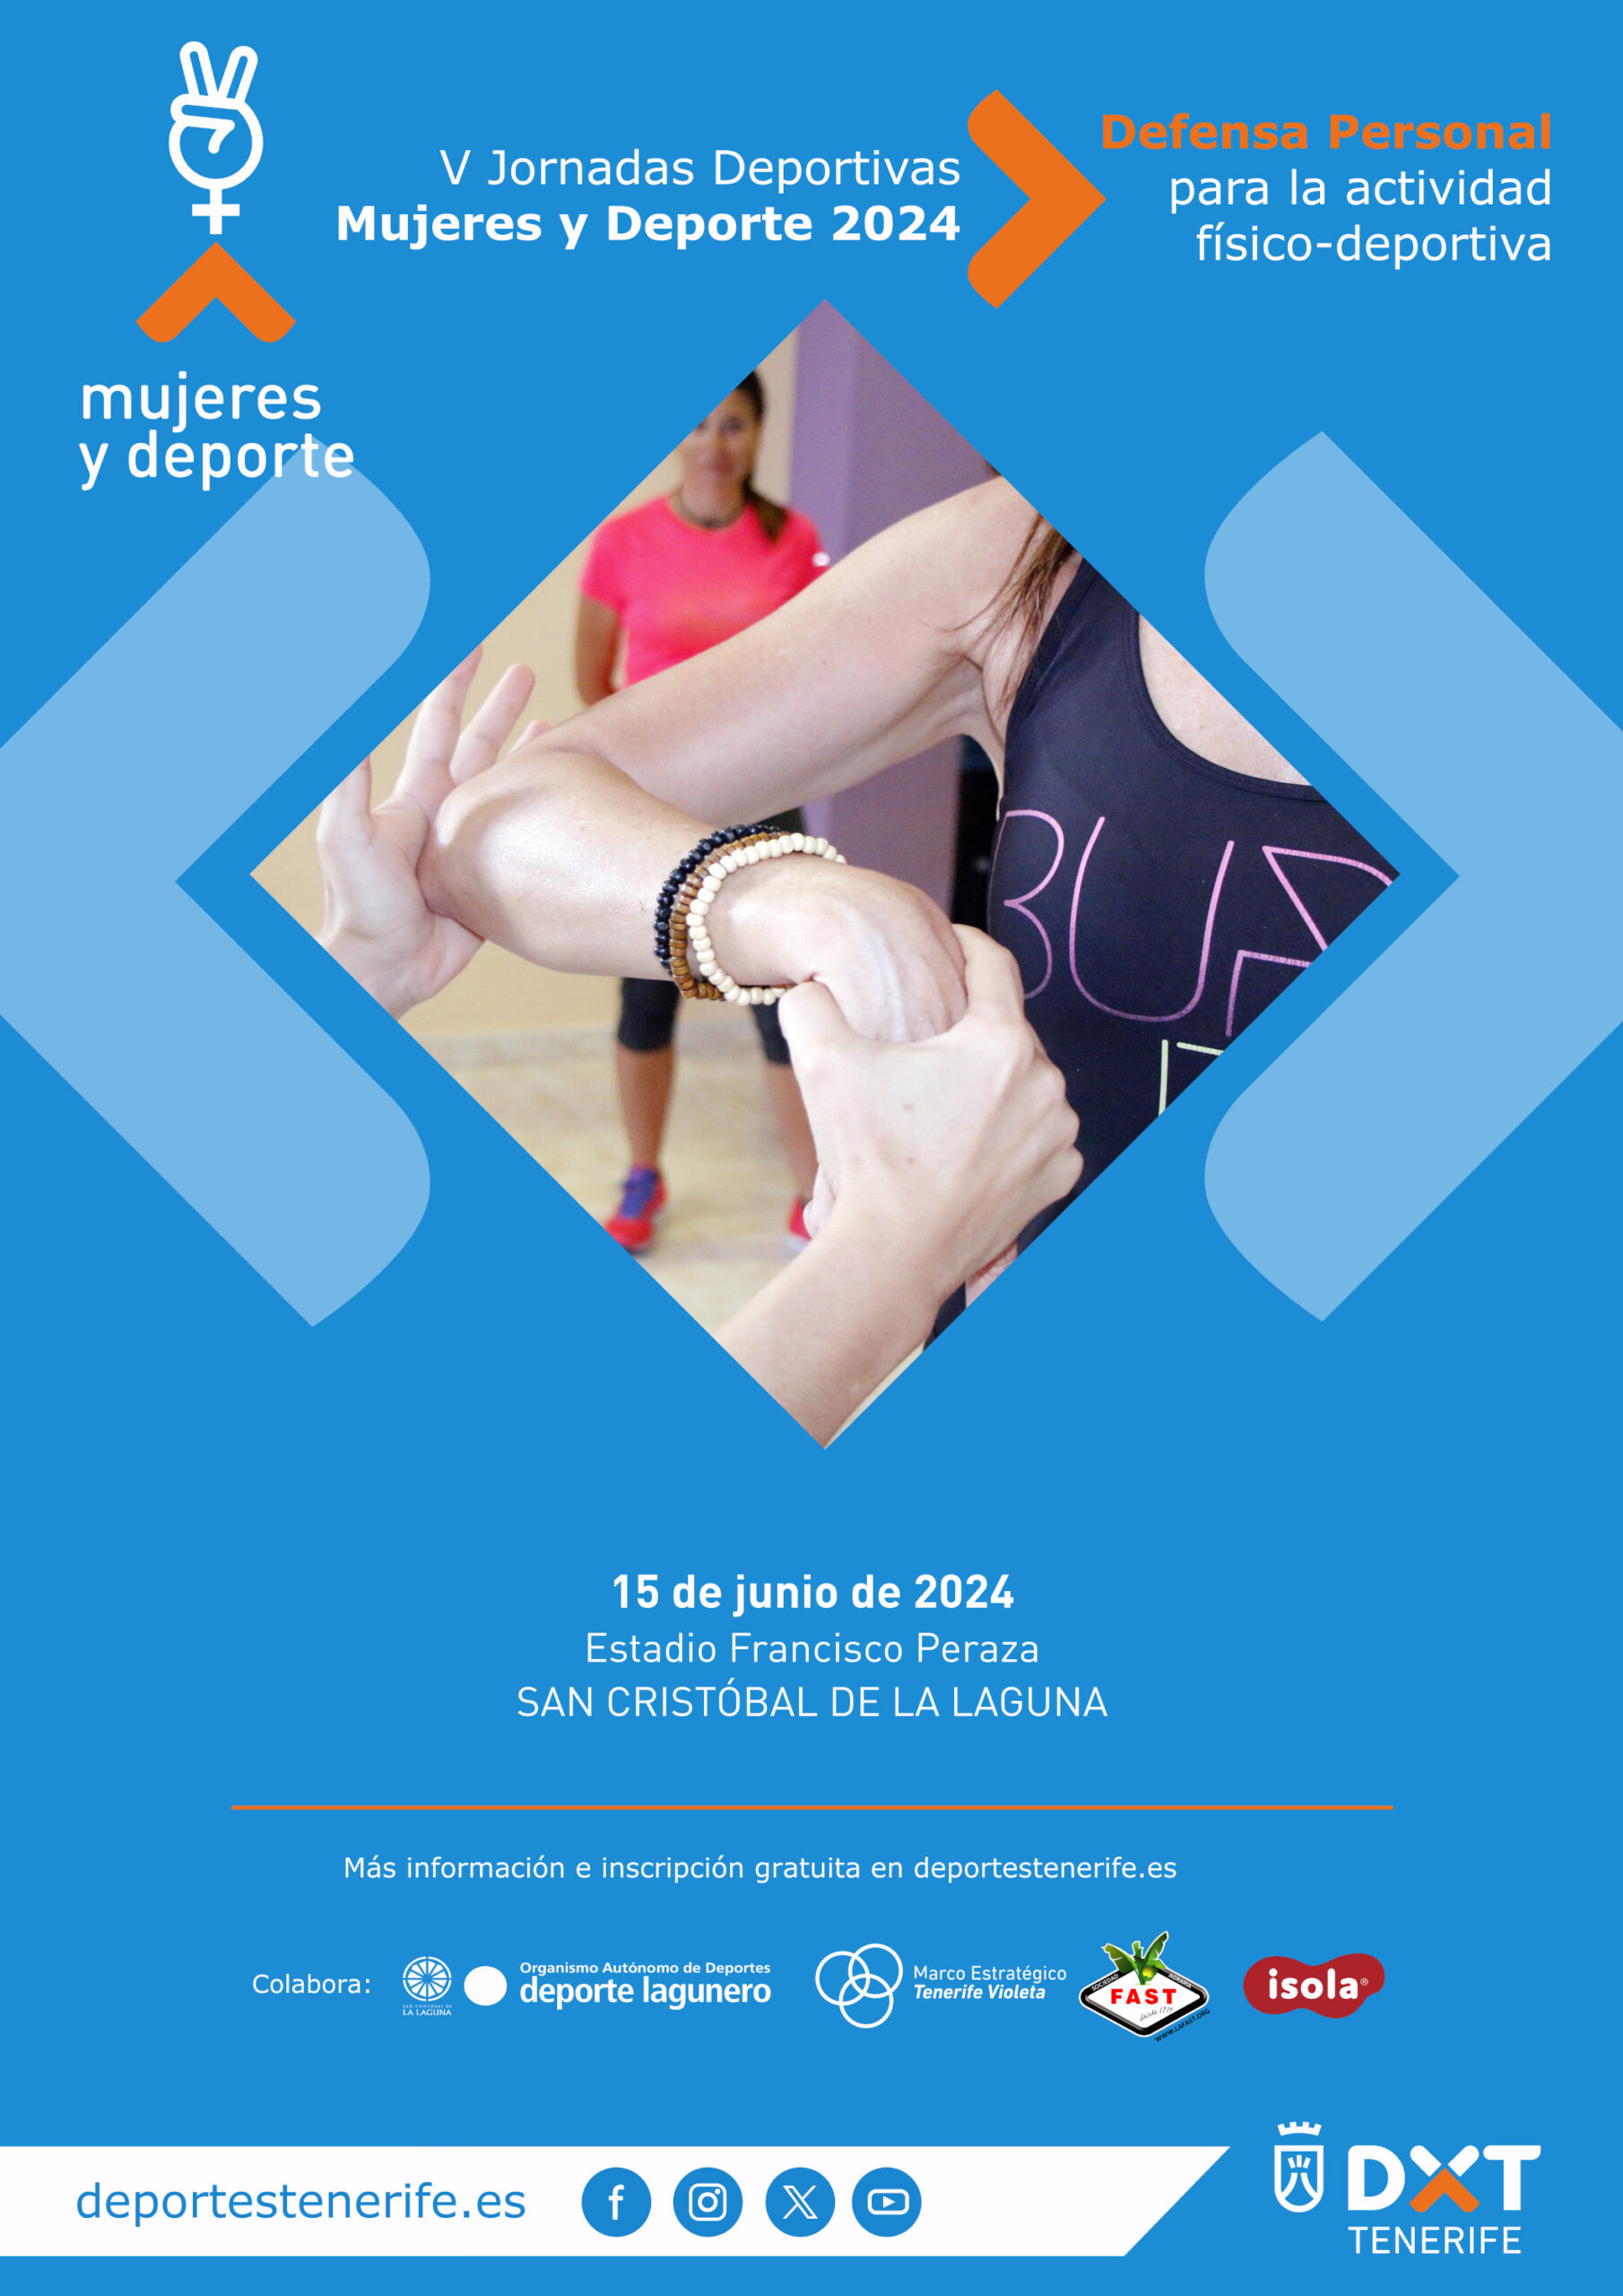 V Jornadas Deportivas Mujeres y Deporte 2024 - Defensa Personal para la actividad físico-deportiva